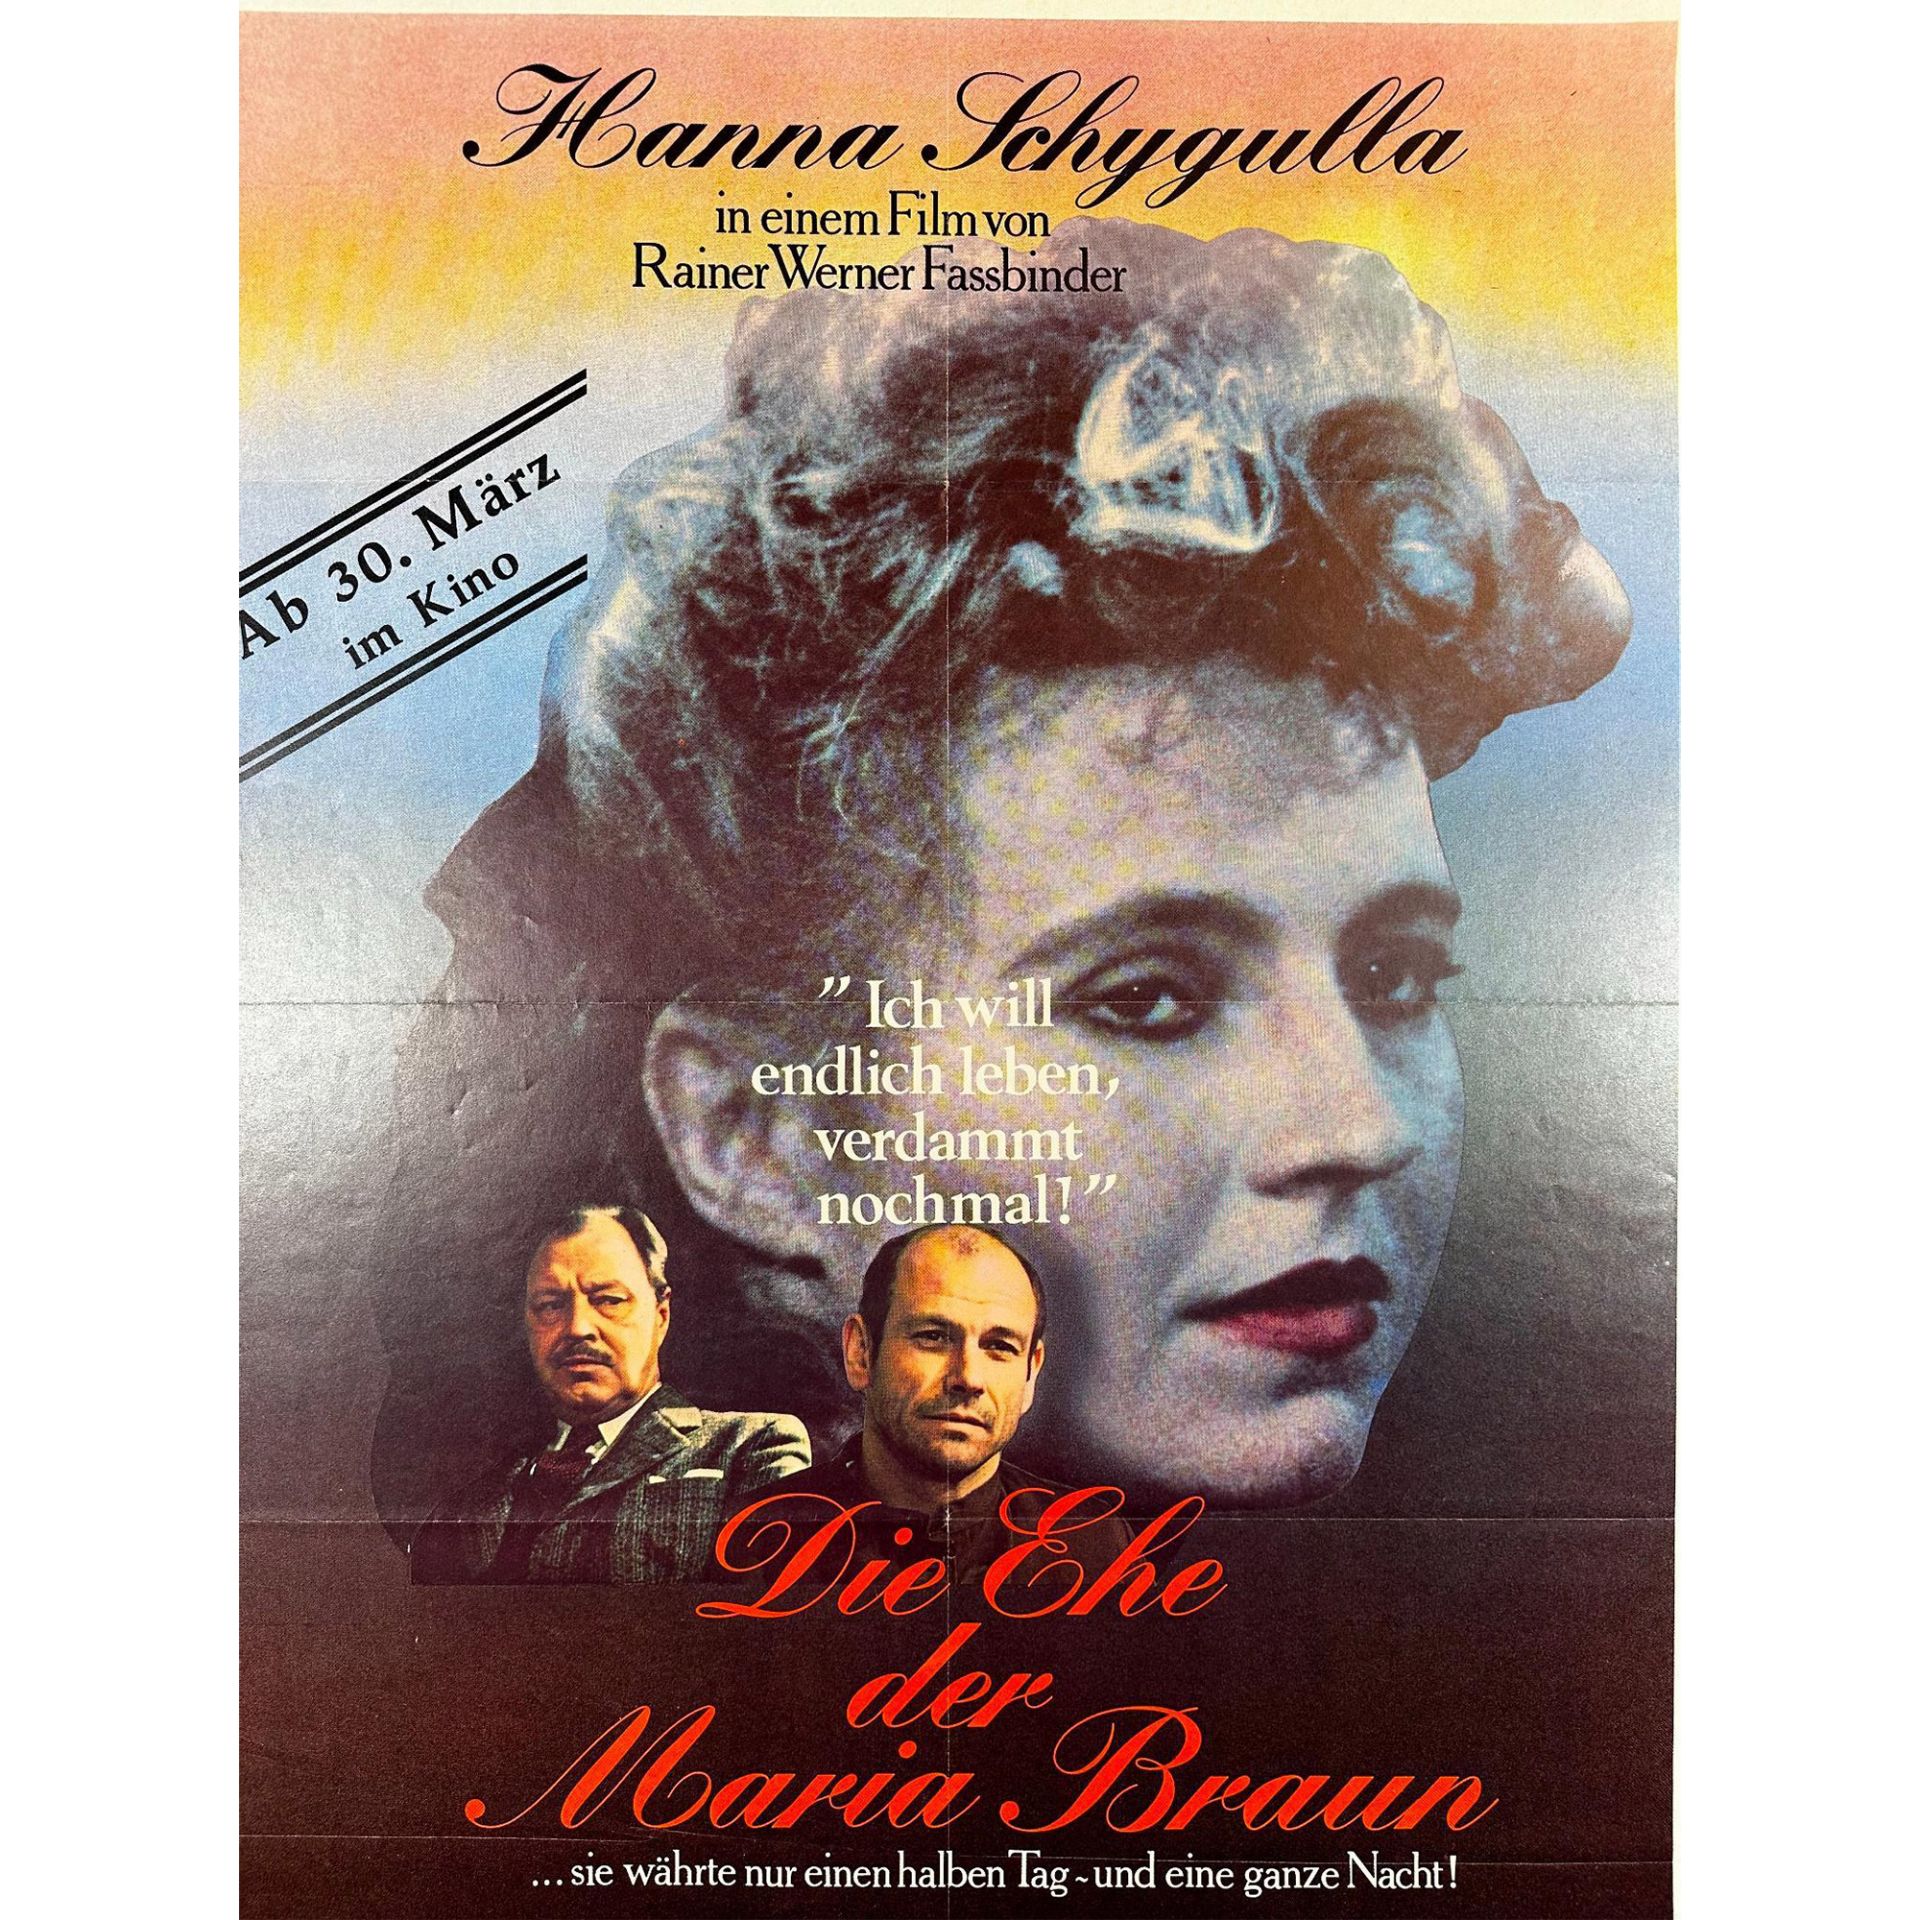 Die The der Maria Brawn Movie Poster - Image 2 of 2